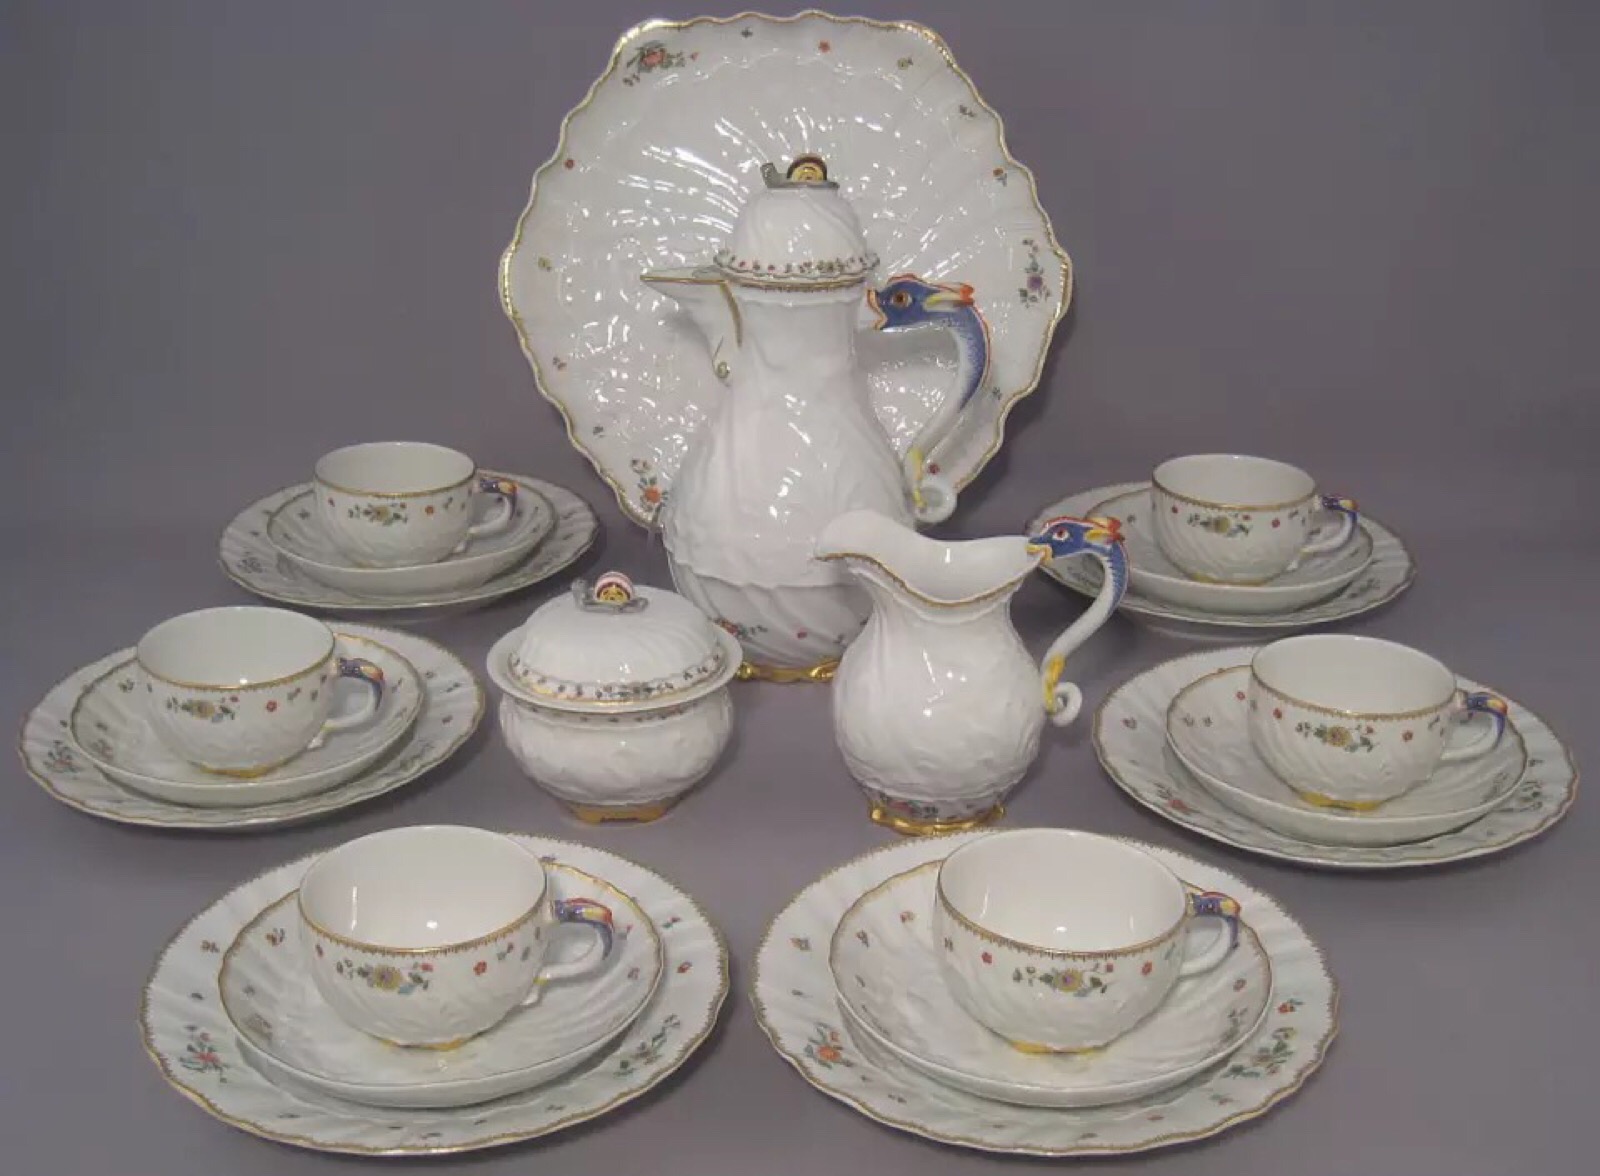 西洋古董德国梅森meissen瓷器 天鹅系列 咖啡壶具6人22件